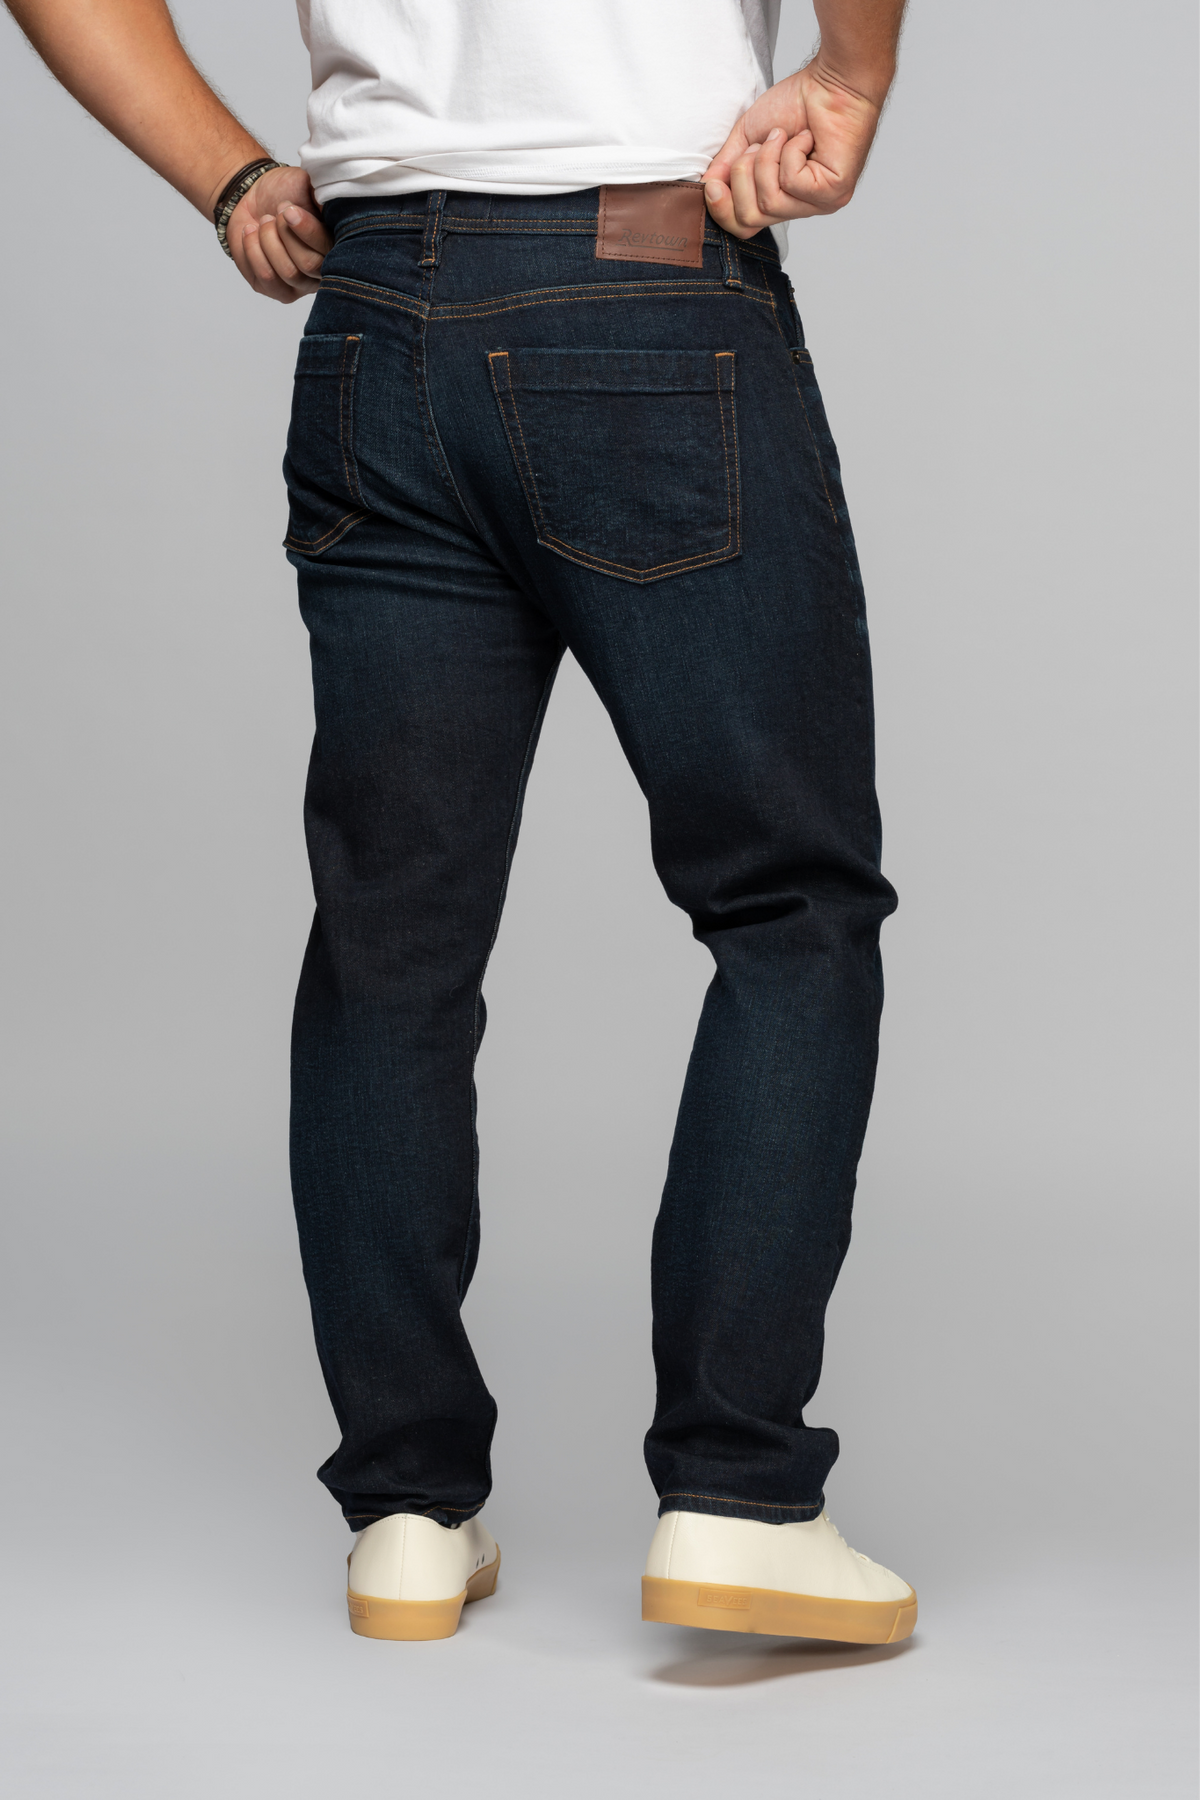 Sharp Men's Slim Fit Jeans - Dark Indigo Wash | Revtown